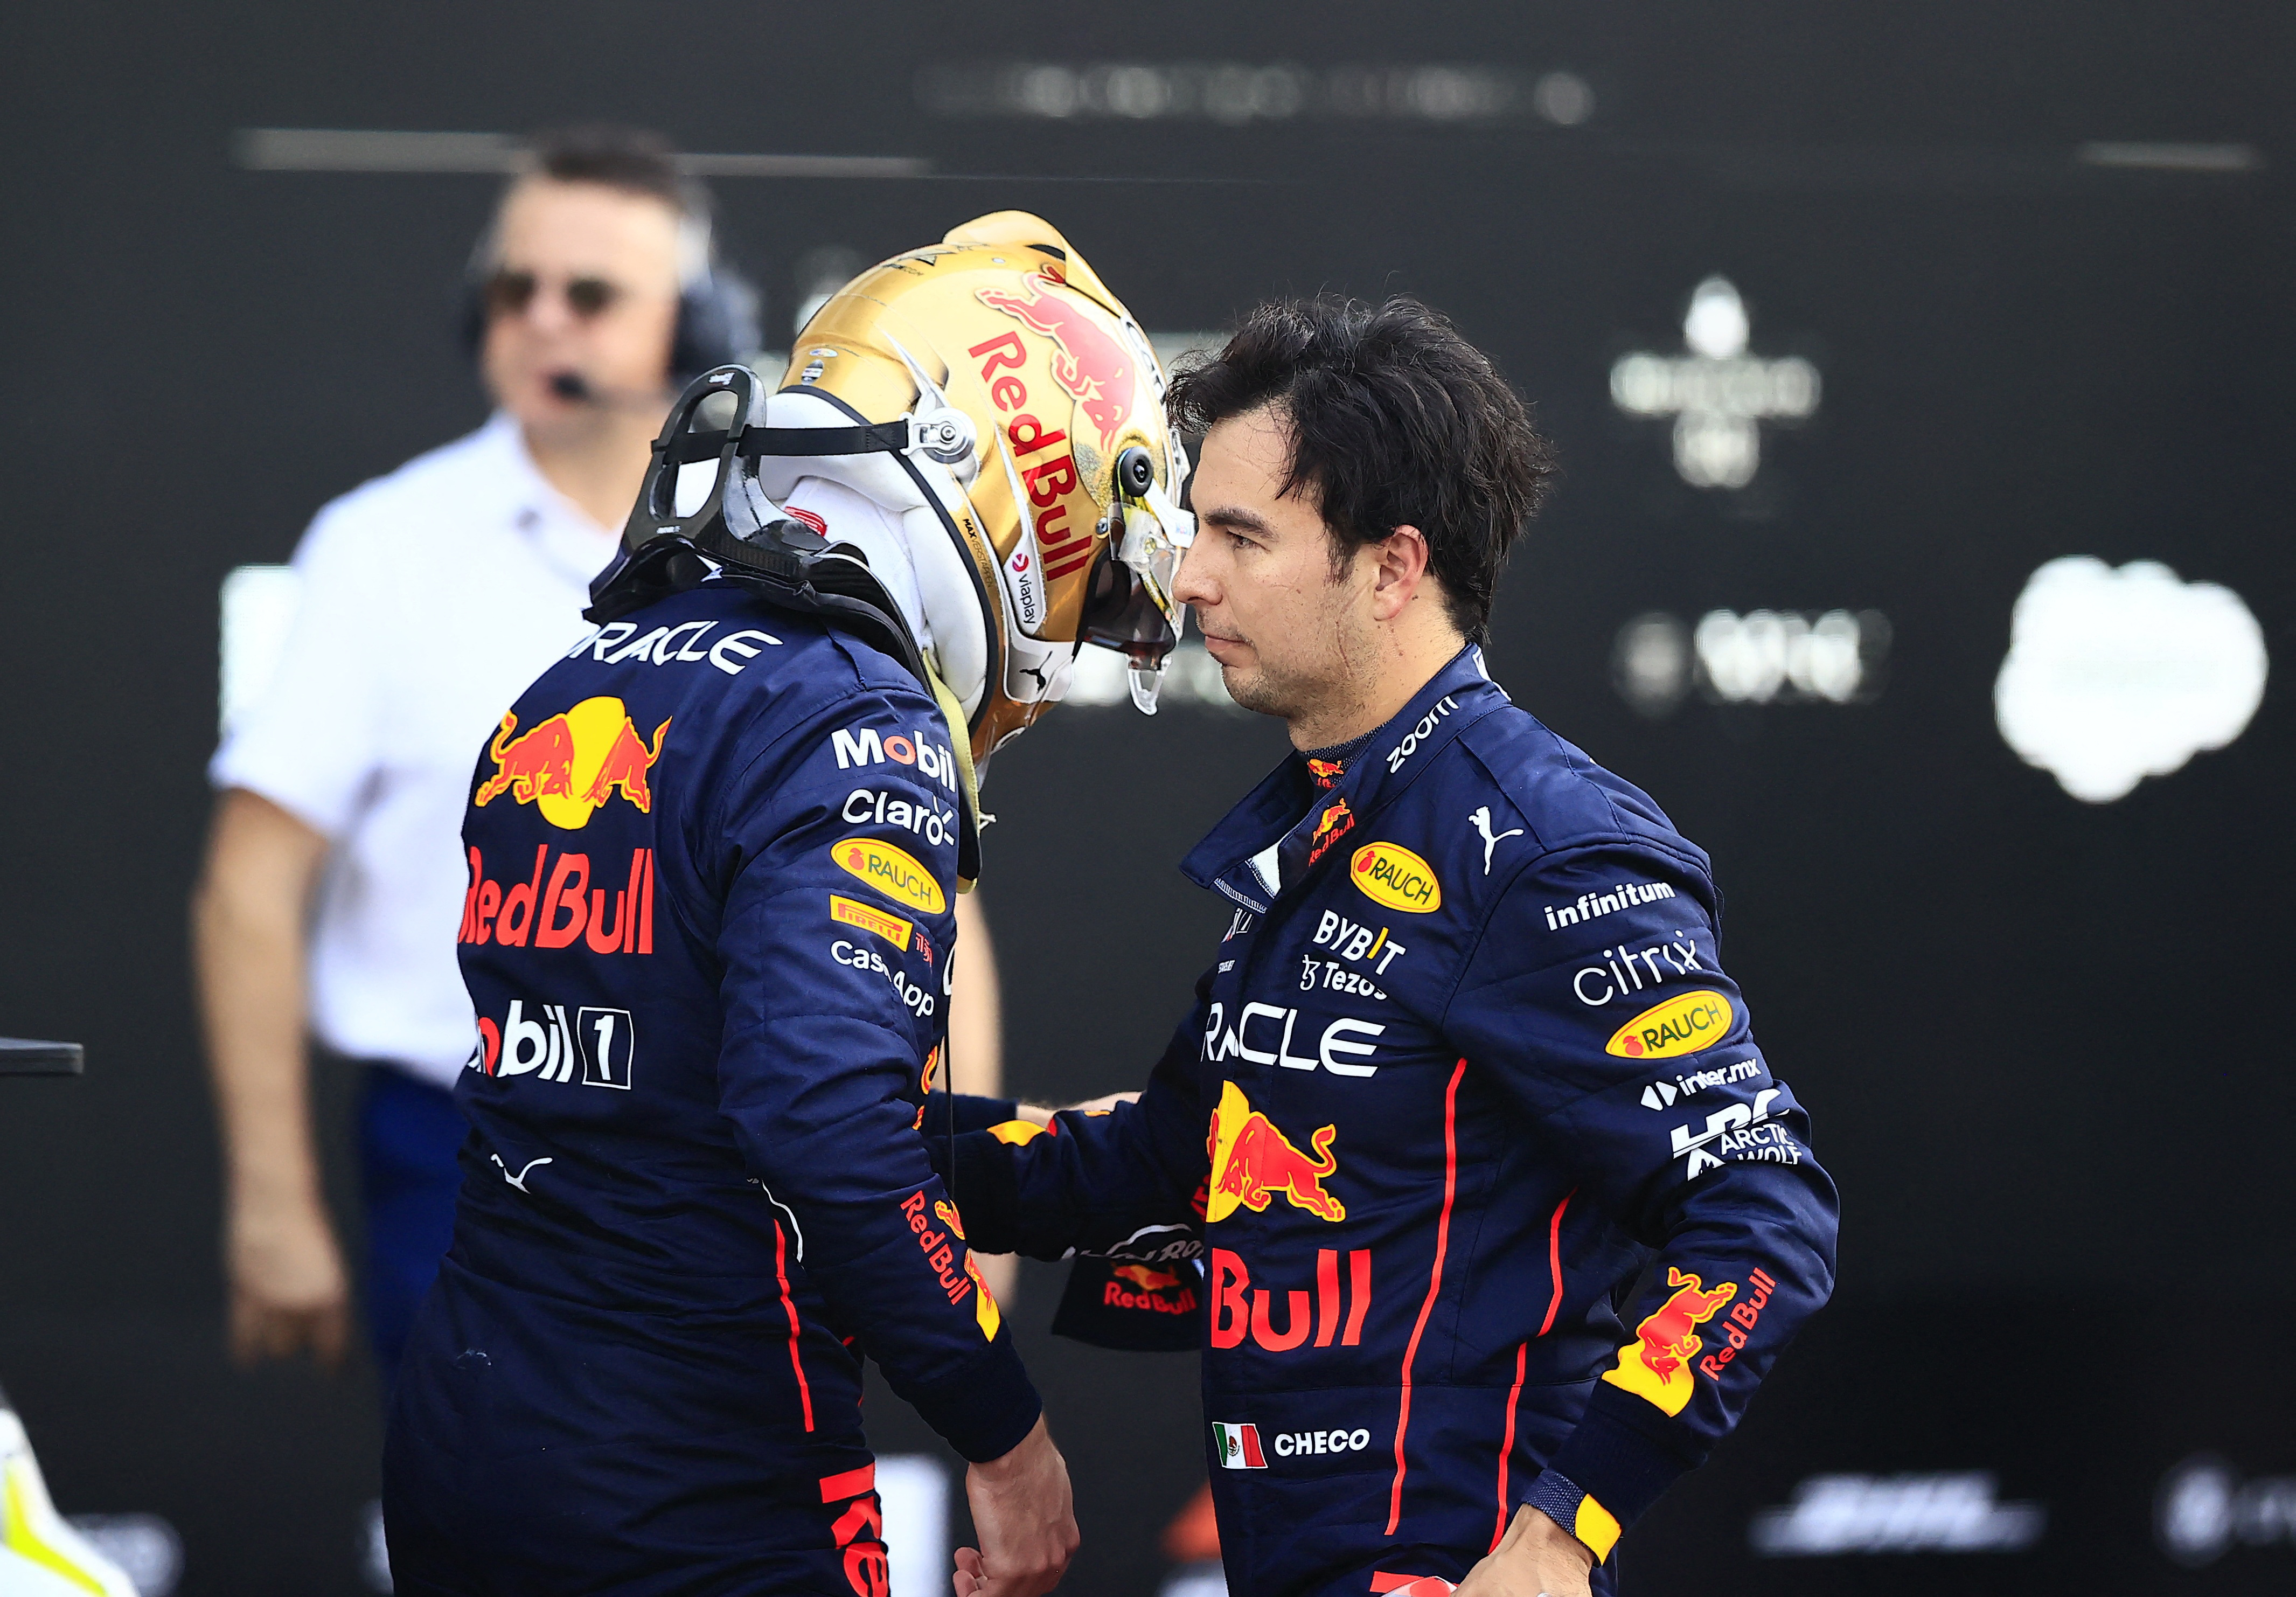 La reconciliación de Checo Pérez con Verstappen tras su conflicto en el GP de Brasil